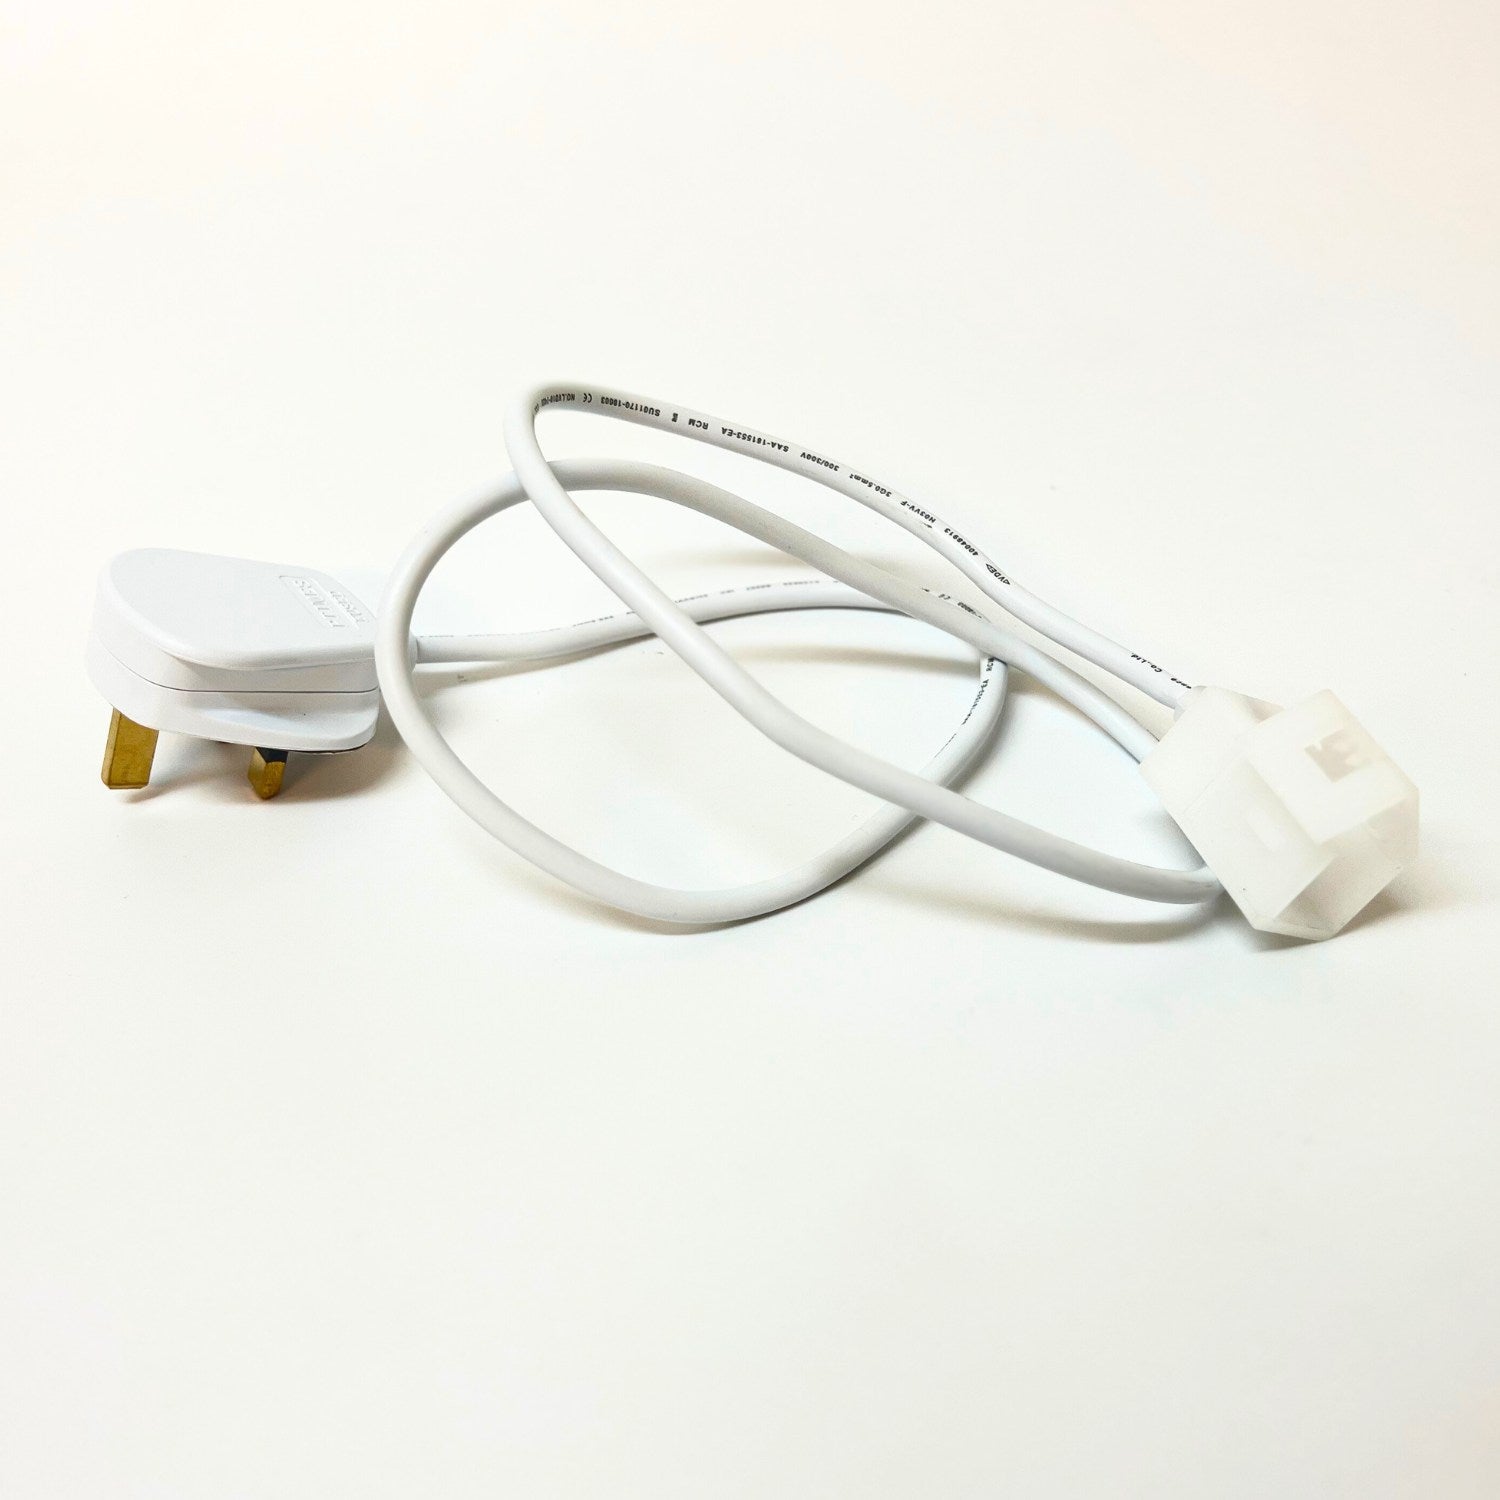 Cool White Neon Flex 6000K 16x16mm 220V 240V Top Bend IP65 10cm Cut with UK Plug - ATOM LED